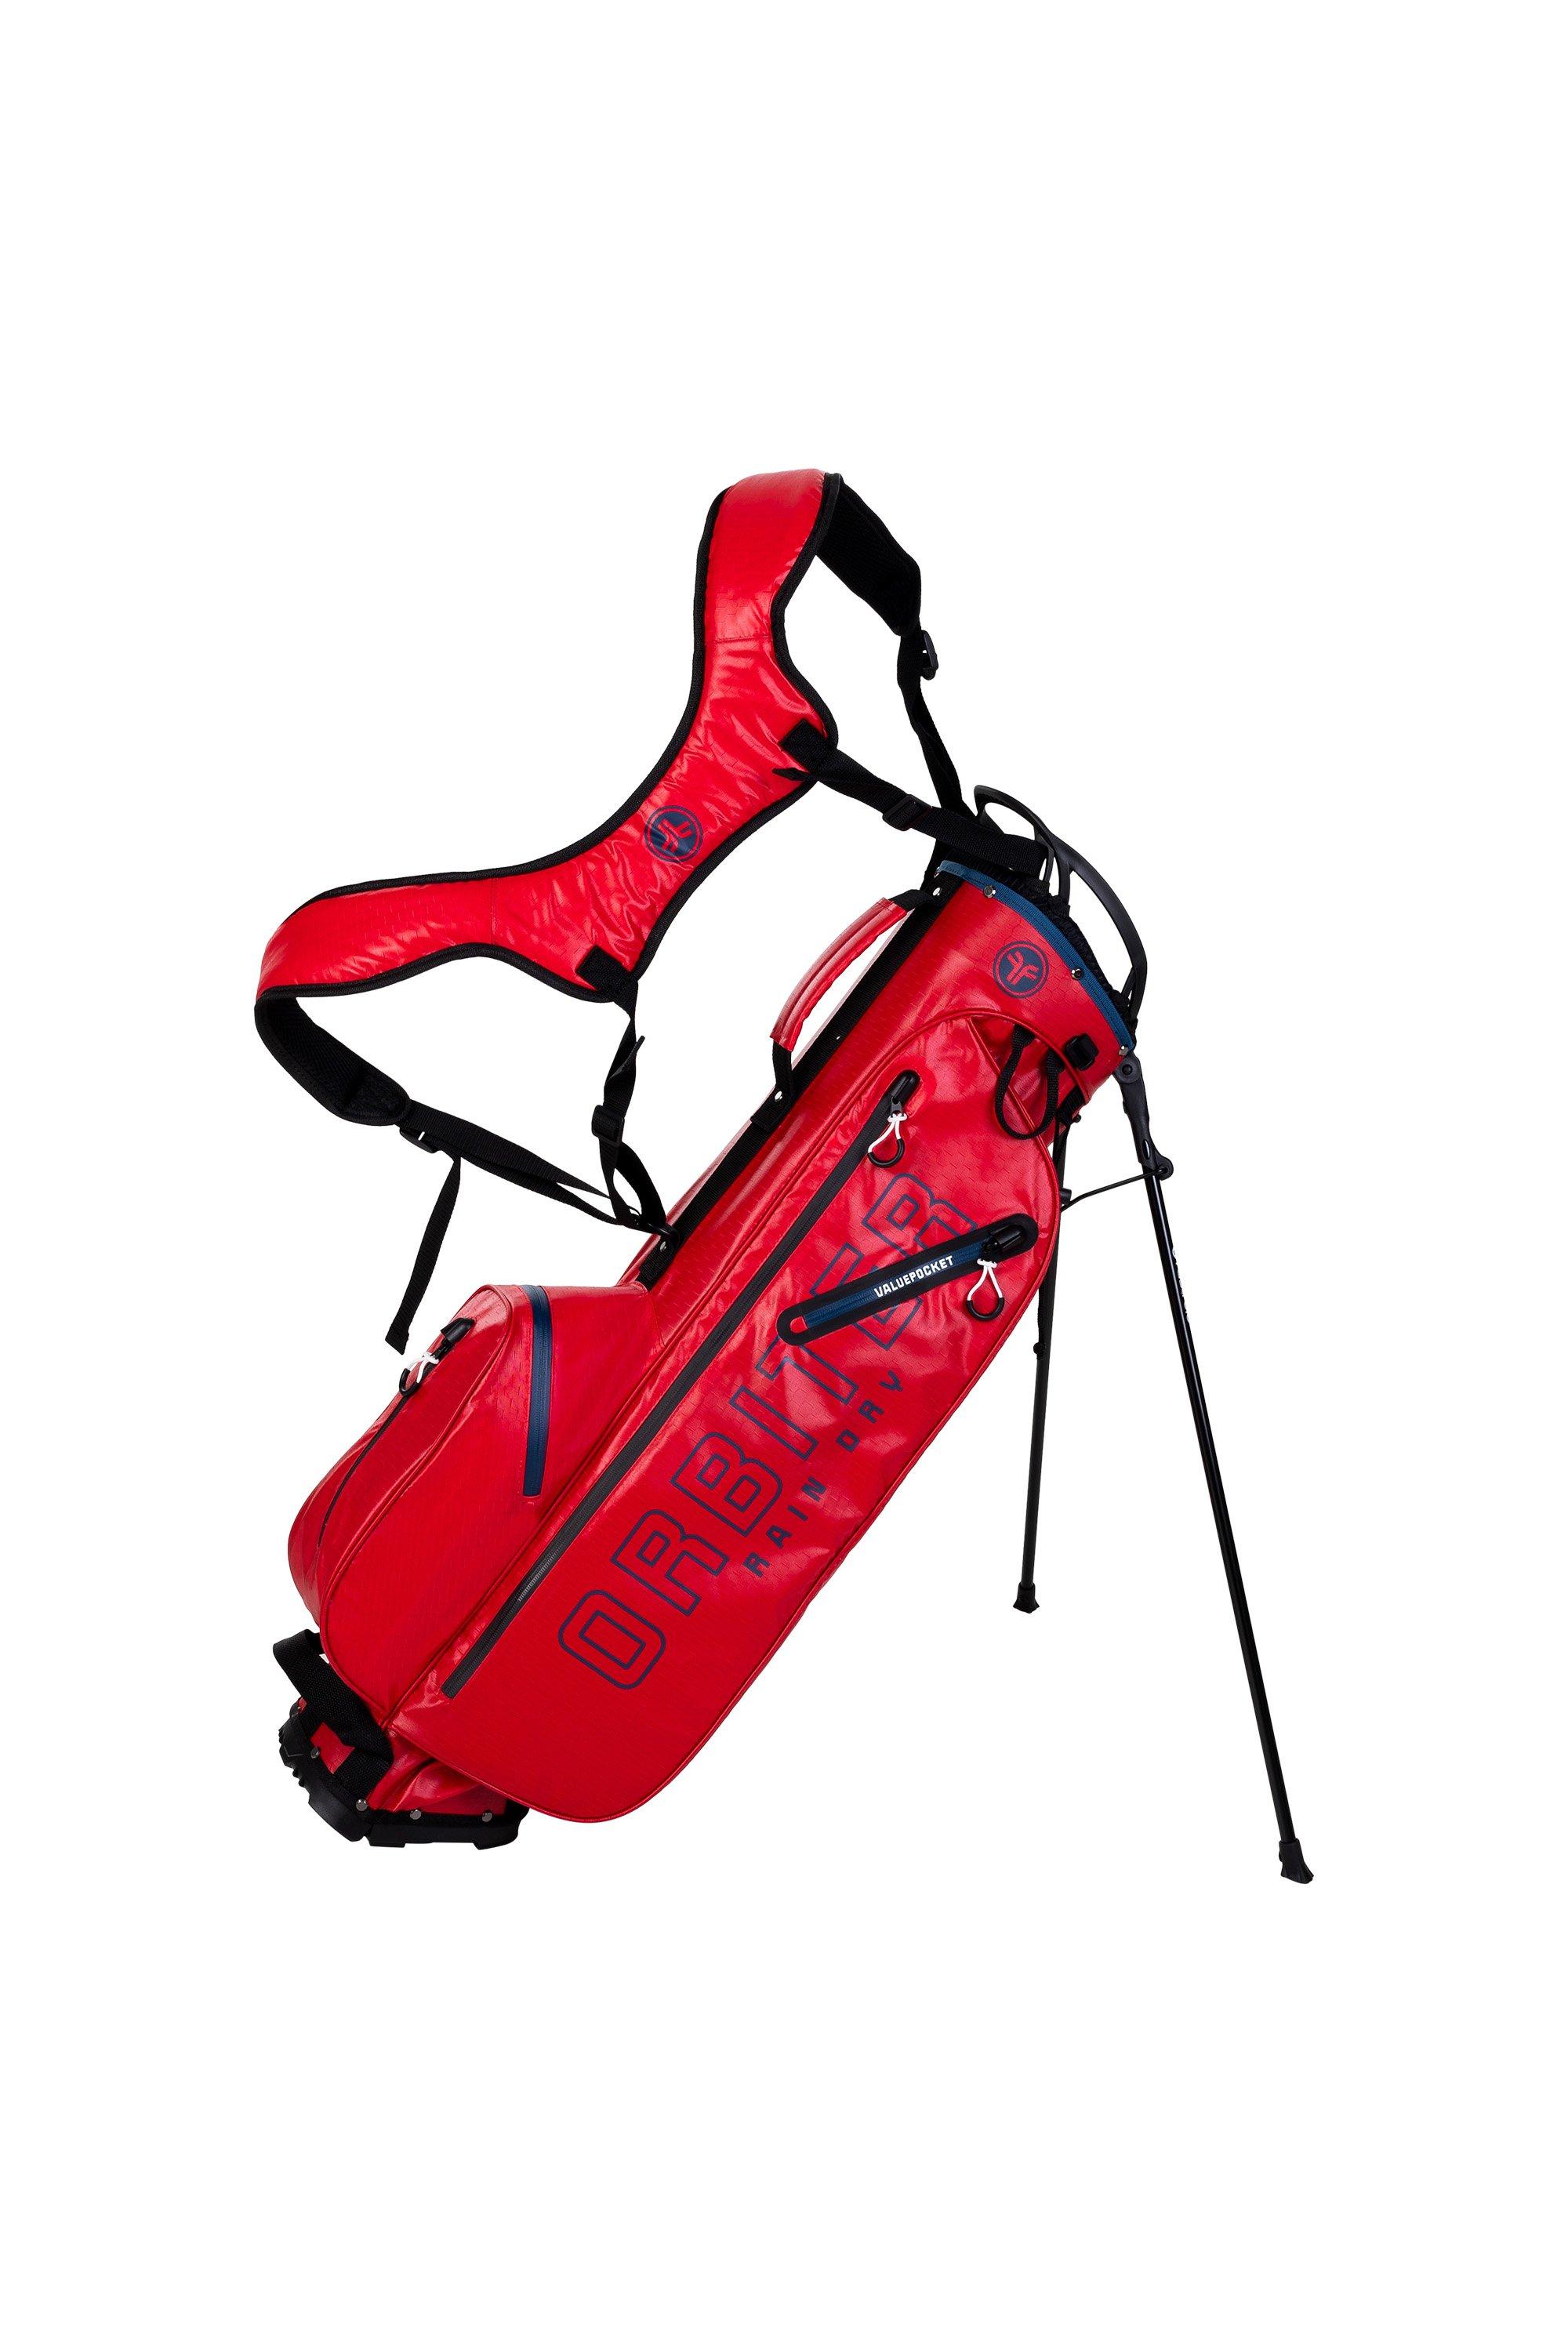 Сумка для гольфа Orbitor FastFold, красный плоская сумка для транспортировки гольфа fastfold черный